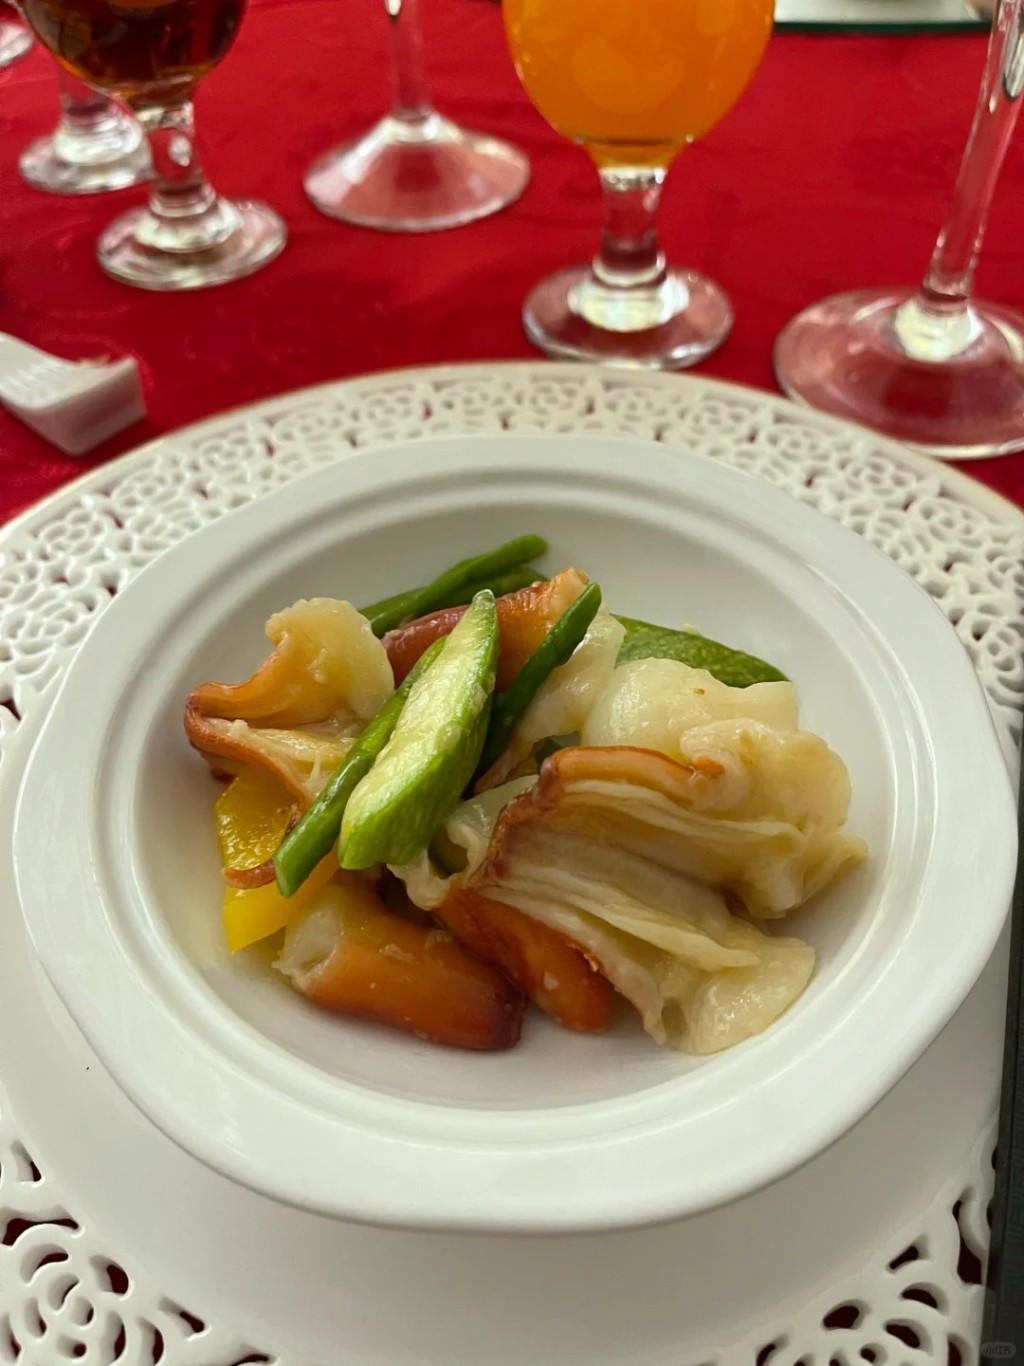 這位網民參加的是一個中式婚宴，席間提供的亦是傳統中菜